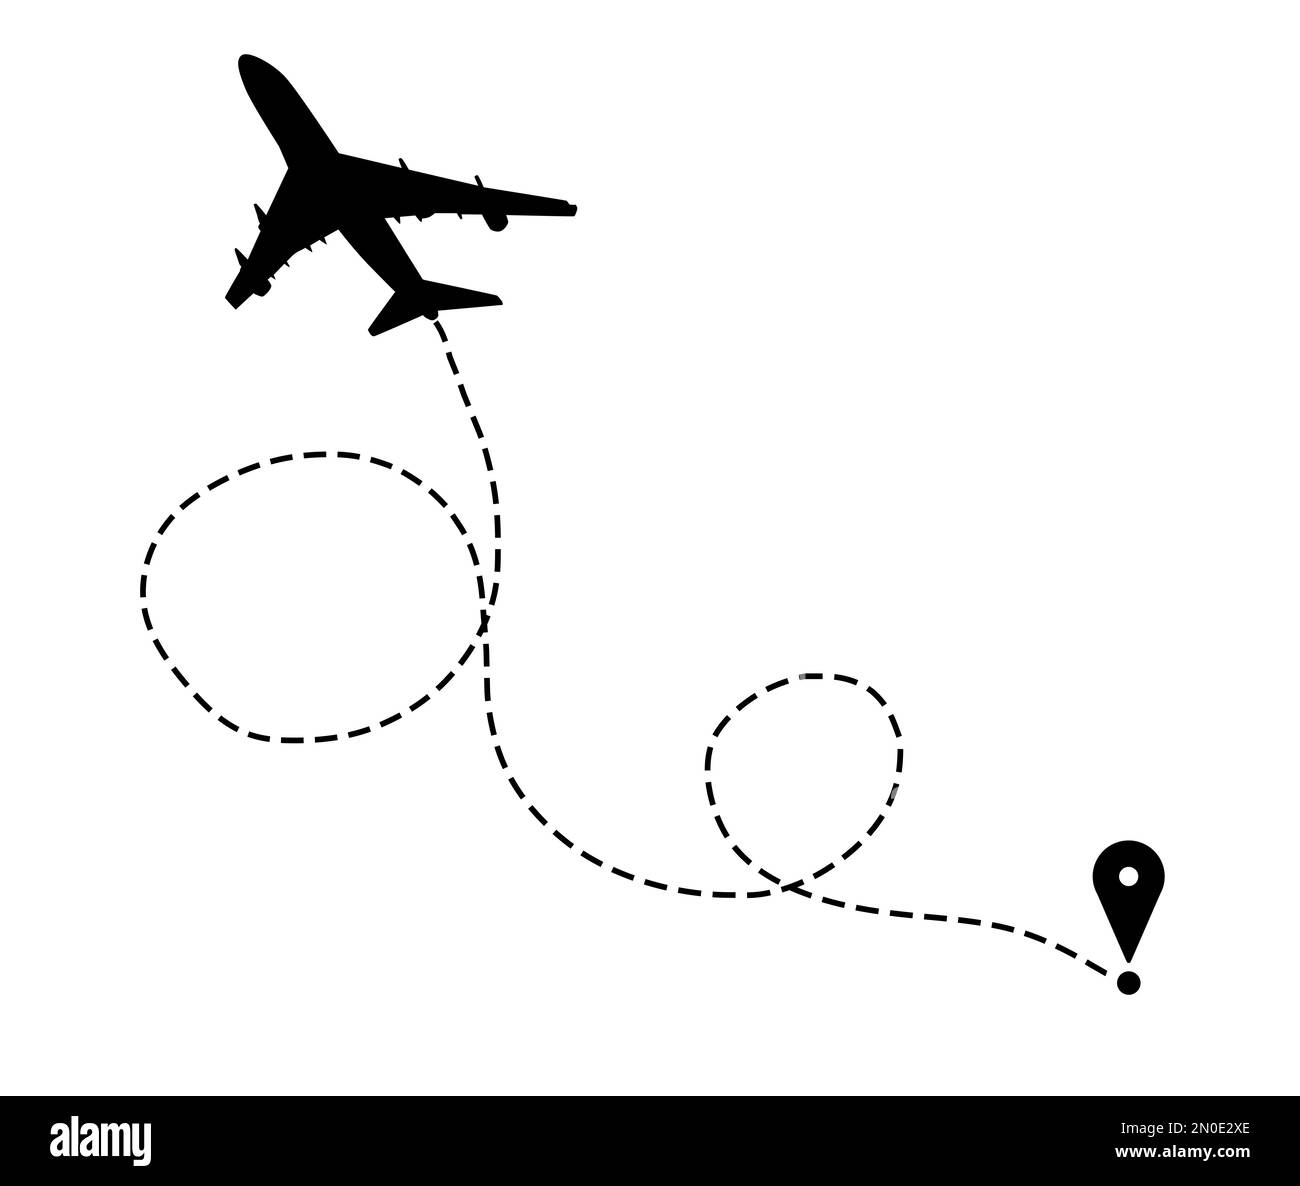 Illustrazione della direzione del volo. Silhouette piana e spilla collegate da una linea tratteggiata su sfondo bianco Foto Stock